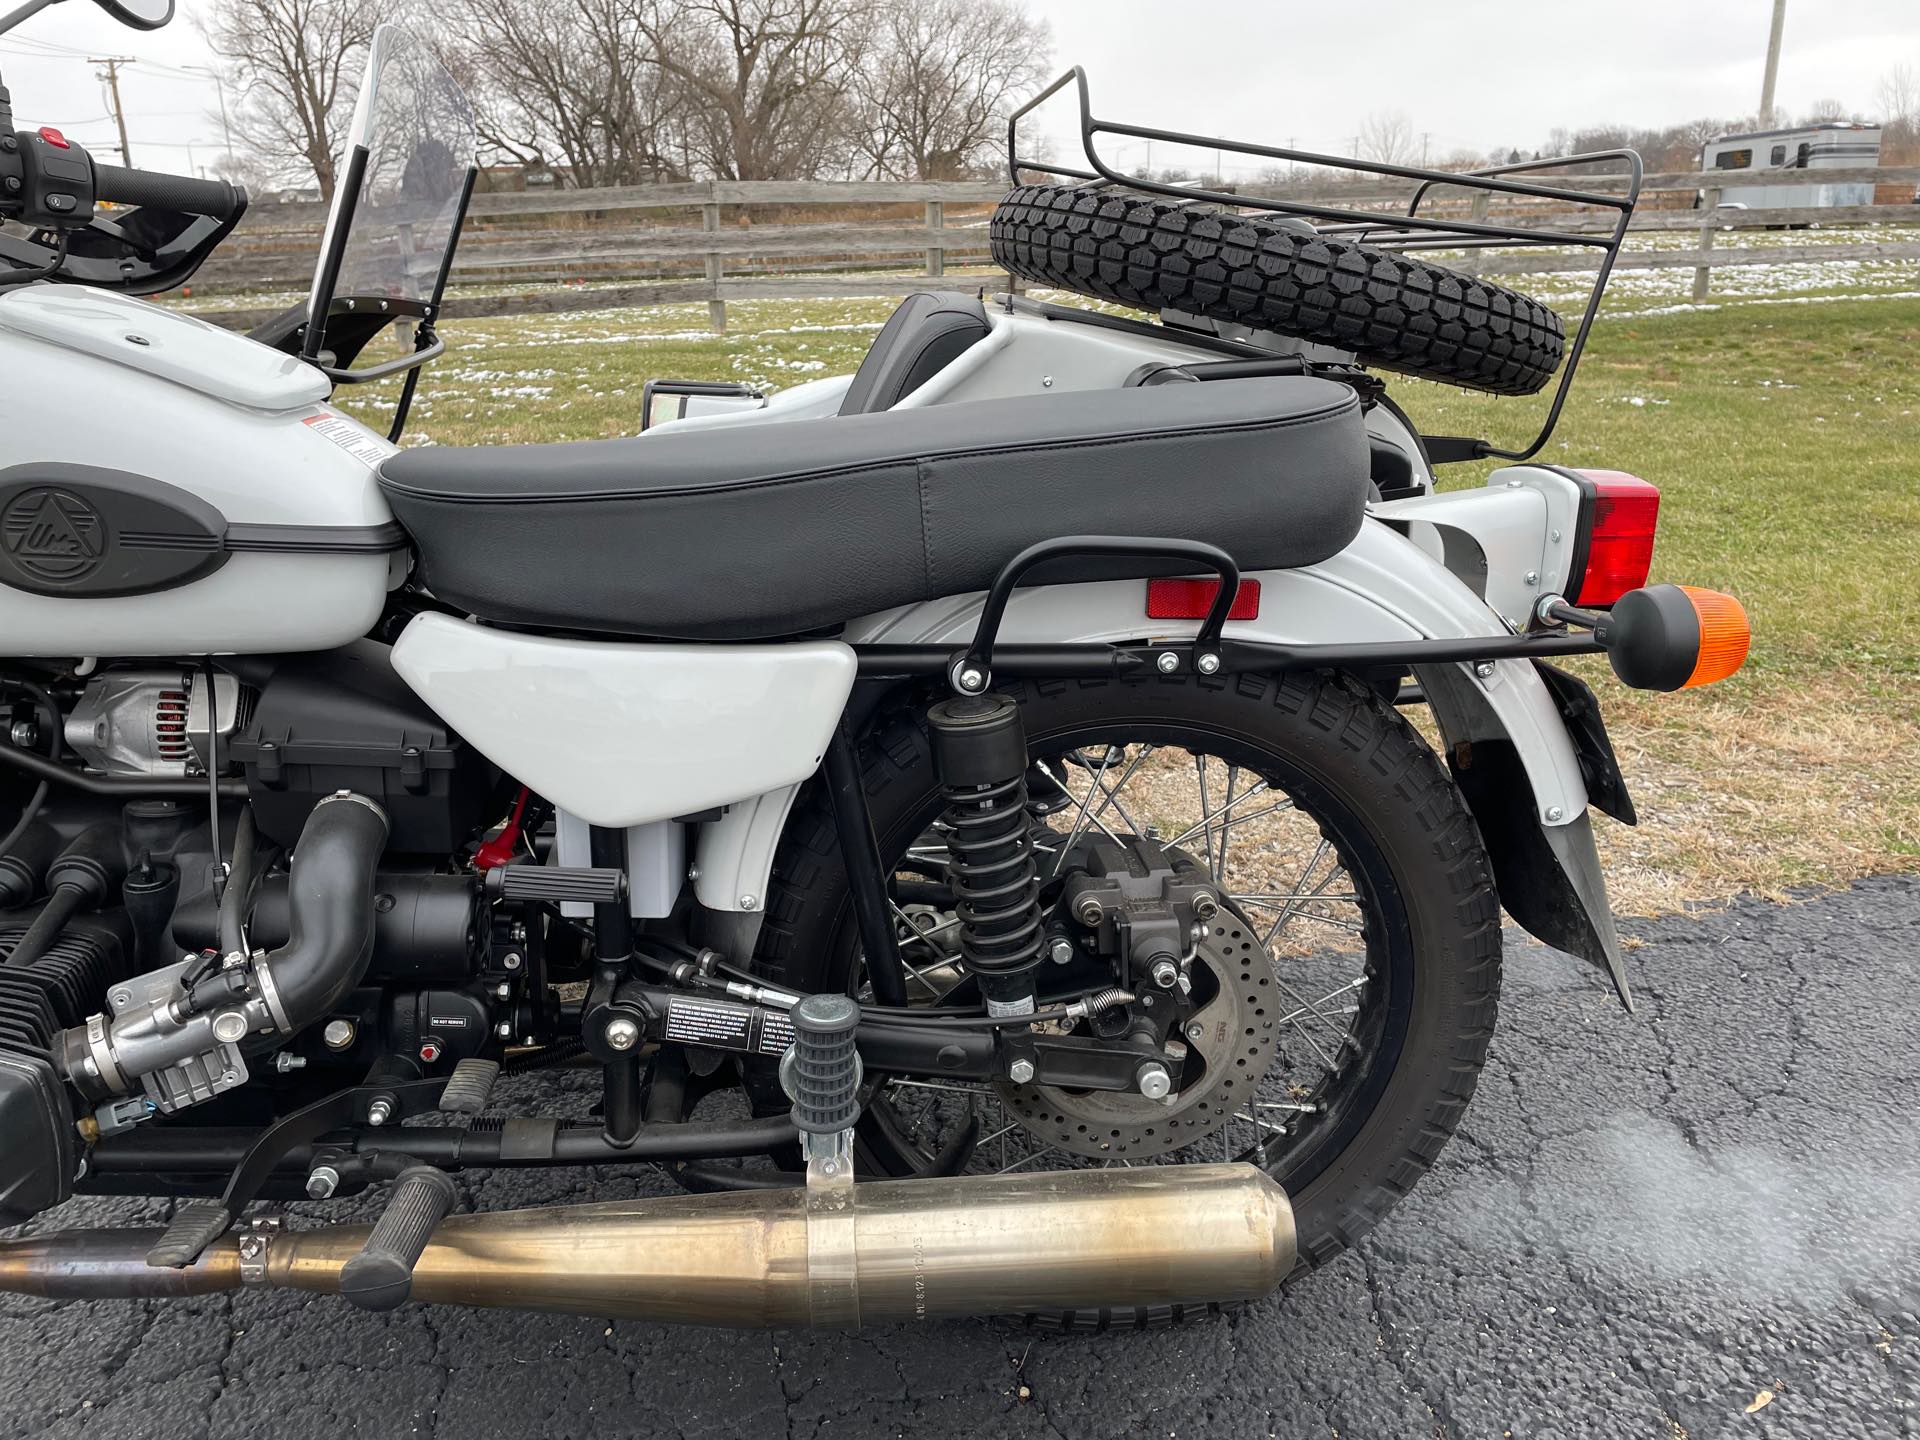 2018 Ural Gear-Up 750 at Randy's Cycle